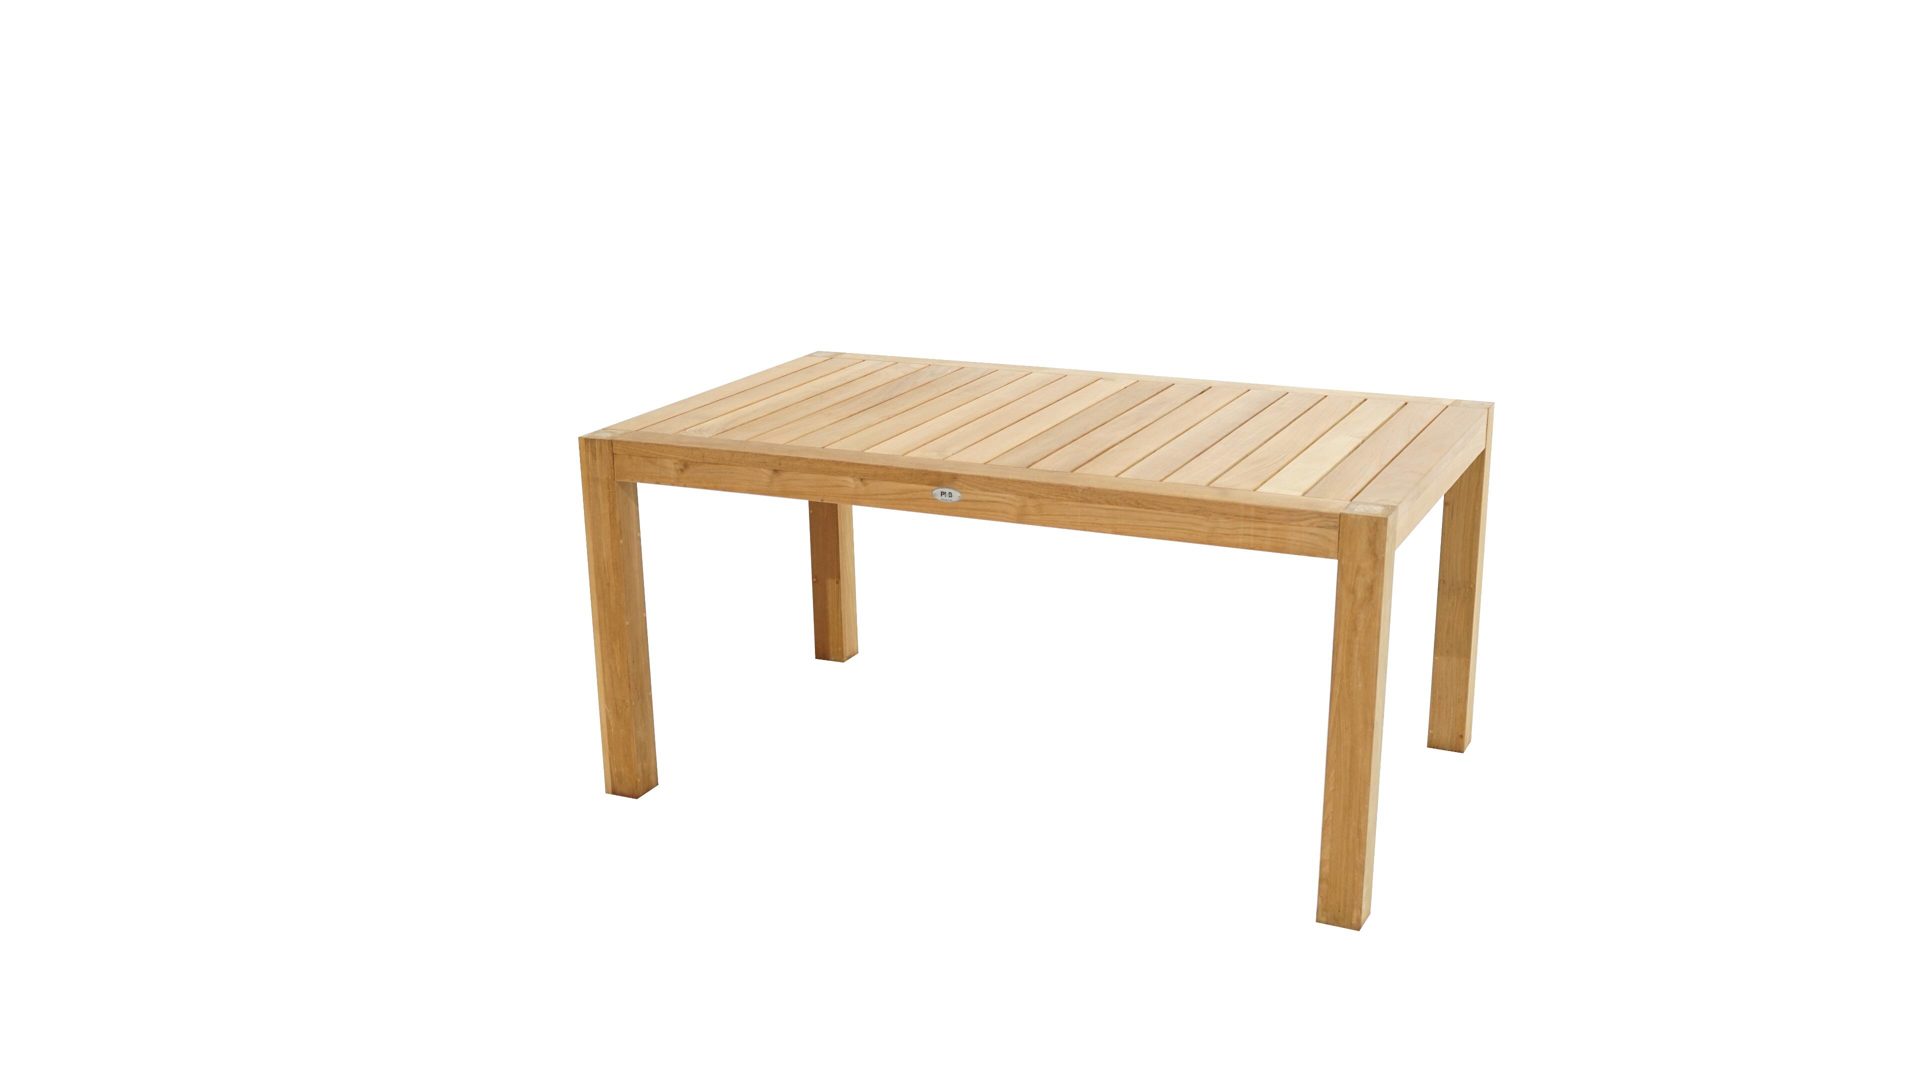 Gartentisch Ploß aus Holz in Holzfarben Ploß® Loft-Tisch New Haven als Gartenmöbel Teakholz – ca. 160 x 100 cm